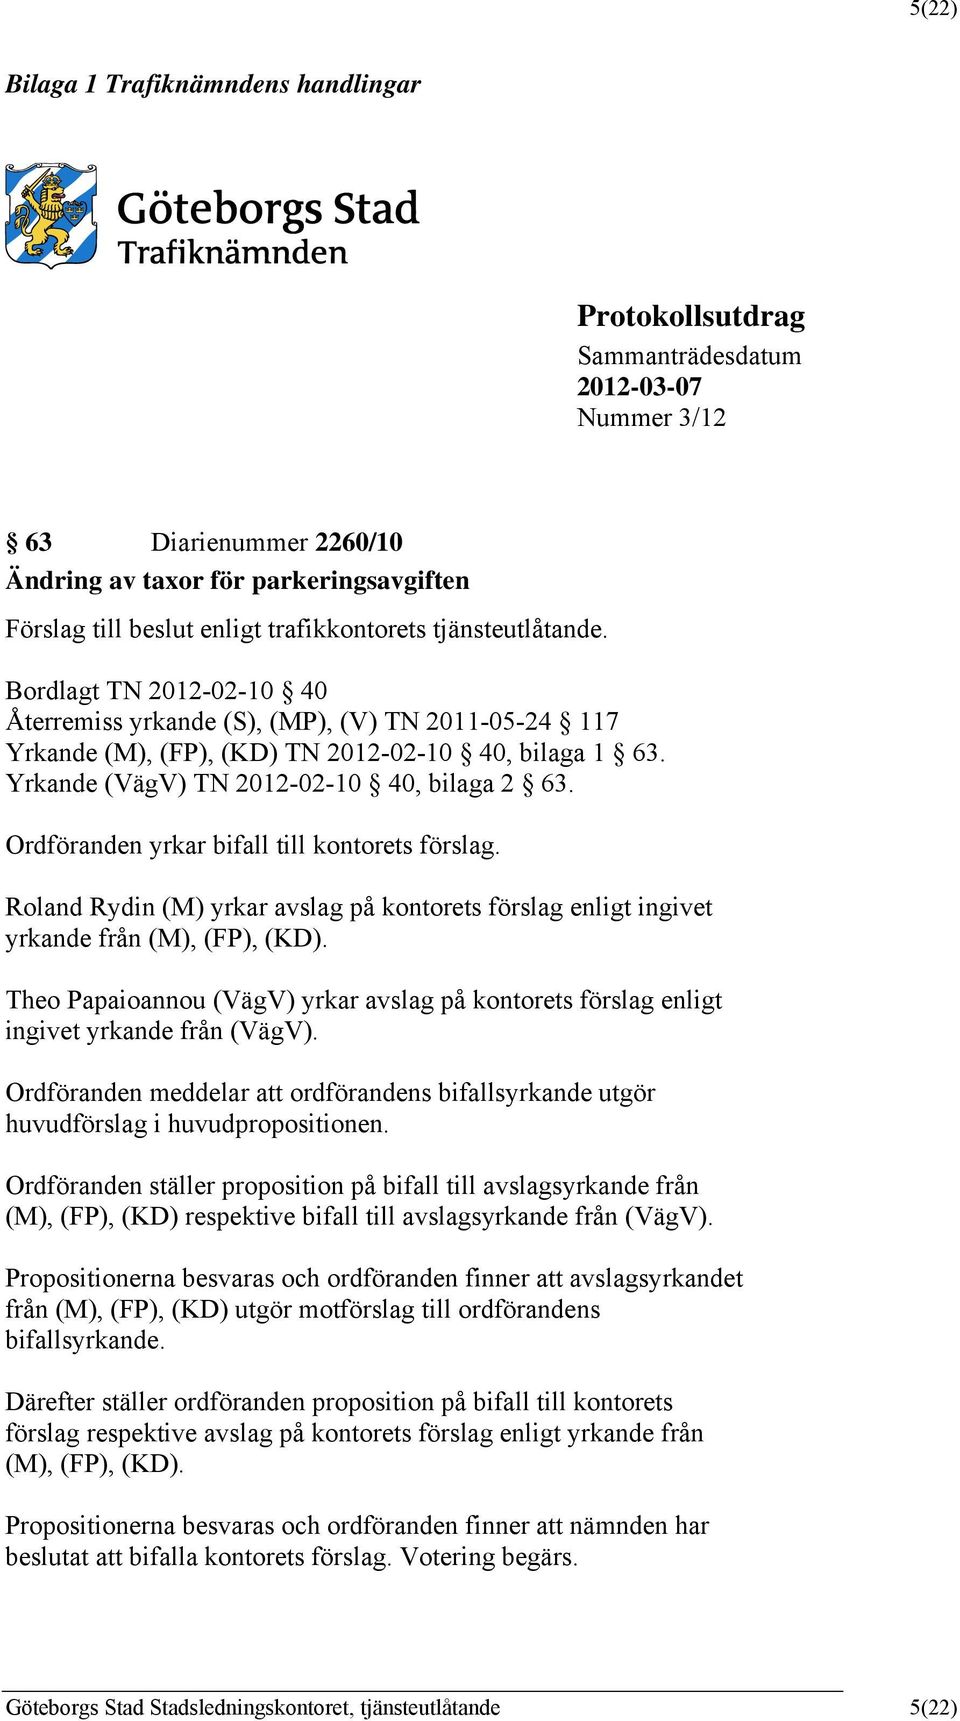 Yrkande (VägV) TN 2012-02-10 40, bilaga 2 63. Ordföranden yrkar bifall till kontorets förslag. Roland Rydin (M) yrkar avslag på kontorets förslag enligt ingivet yrkande från (M), (F), (KD).